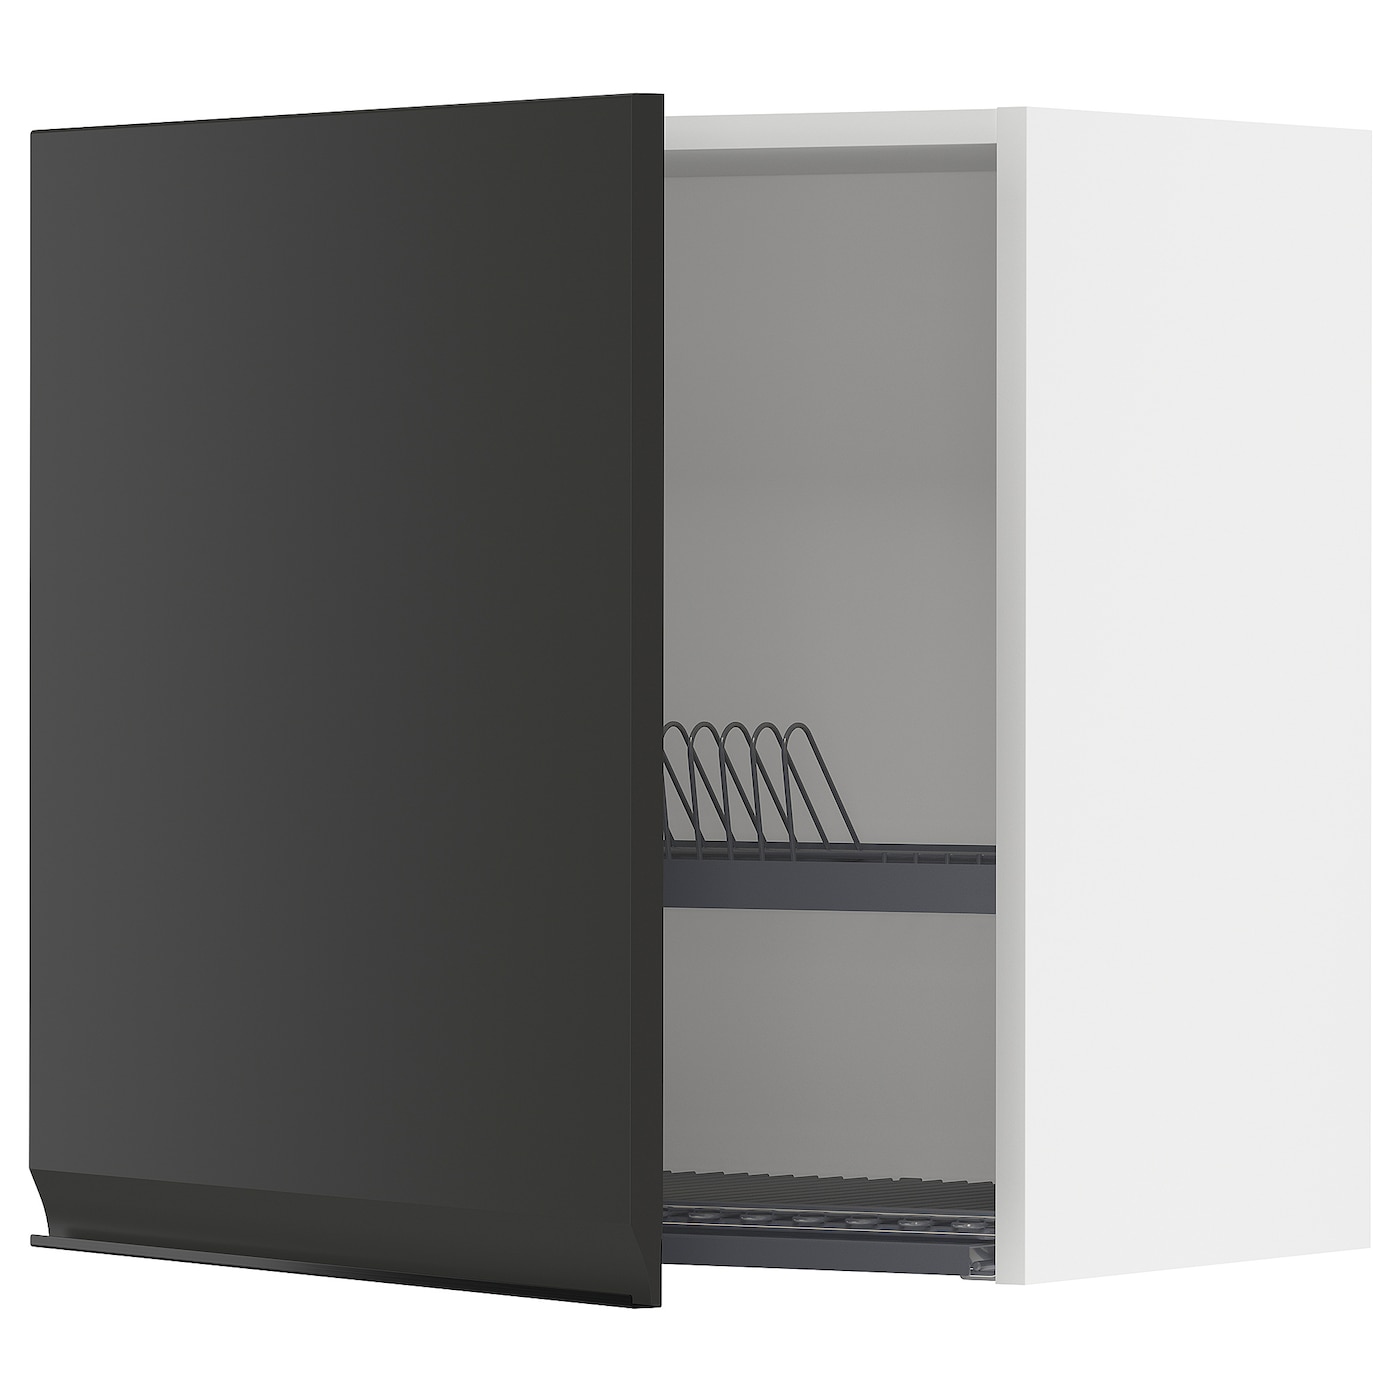 Навесной шкаф с сушилкой - METOD IKEA/ МЕТОД ИКЕА, 60х60 см, черный/белый